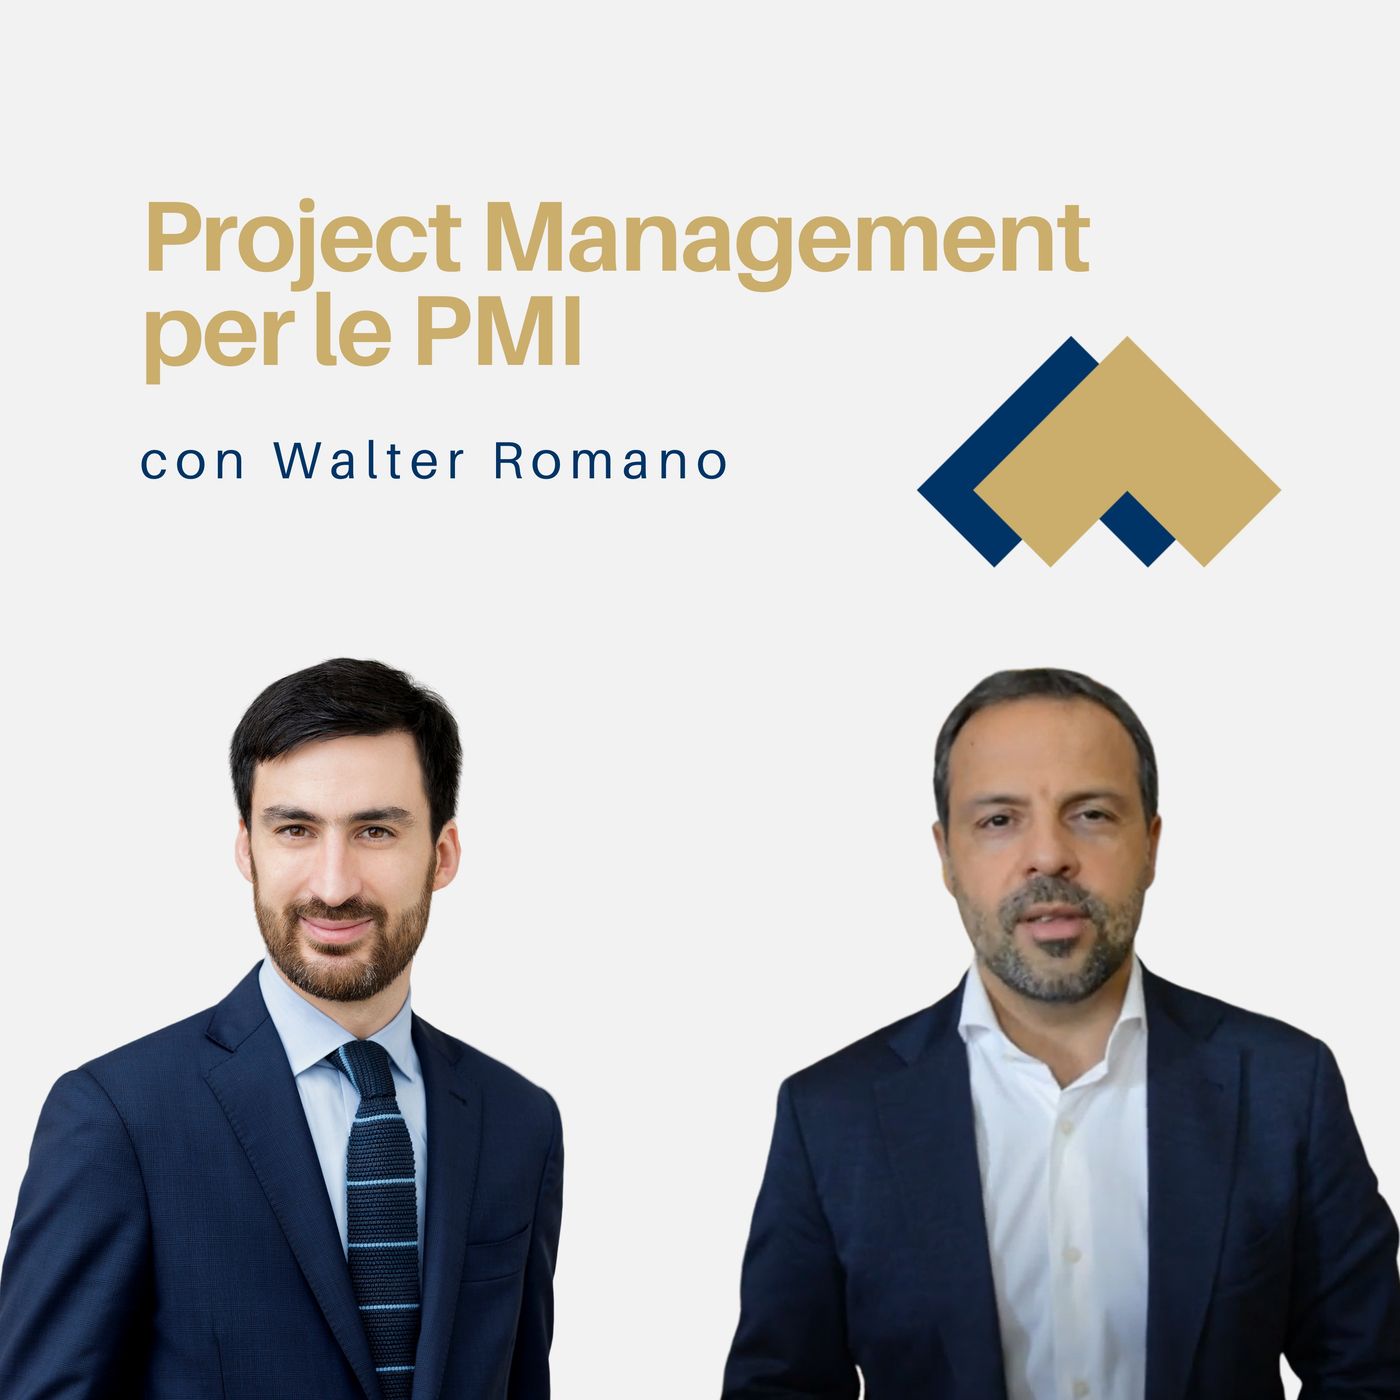 065 - Project Management per le PMI con Walter Romano